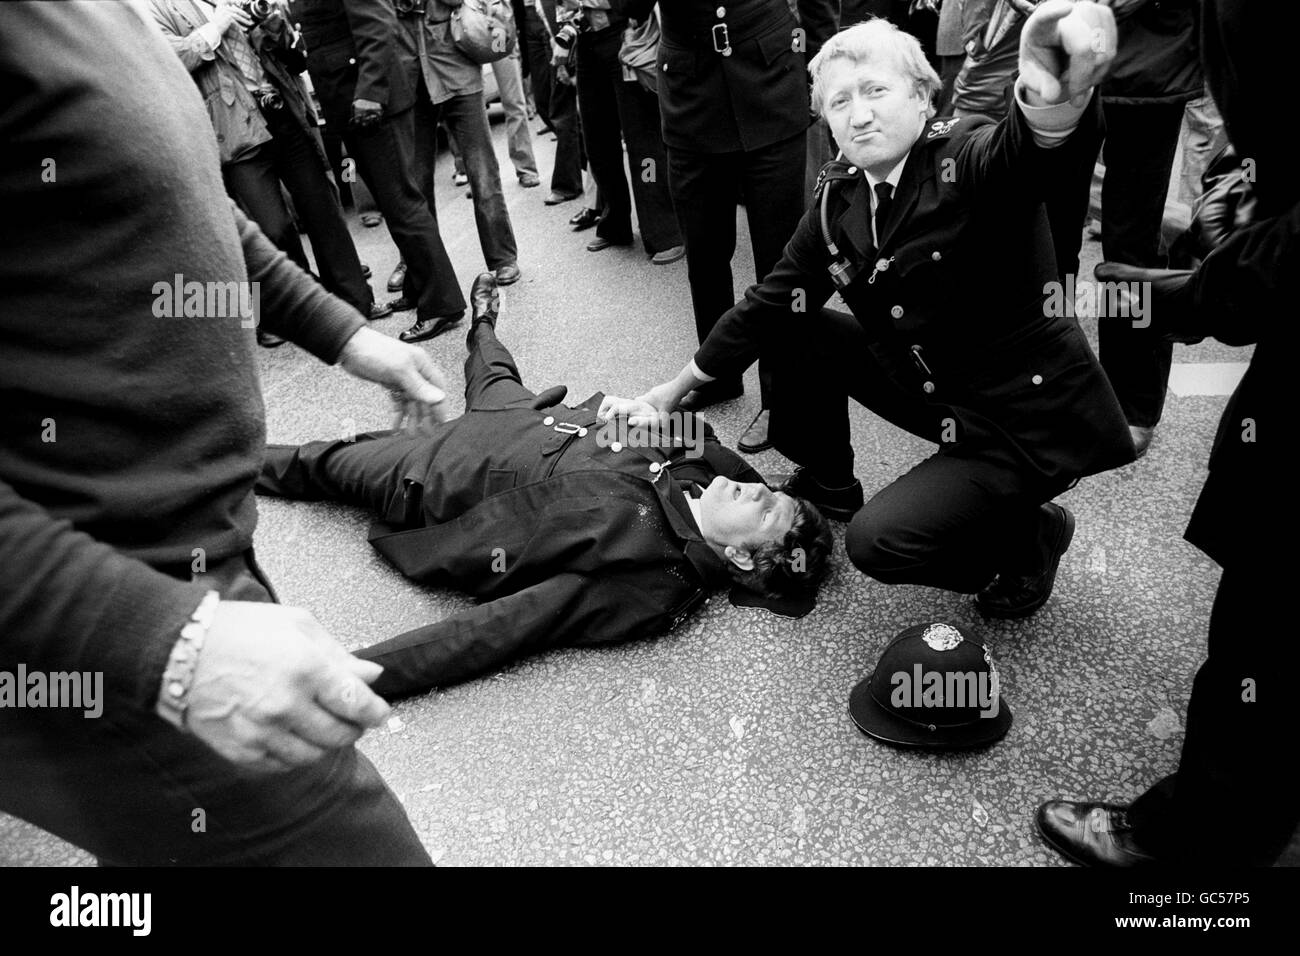 Ein Polizist schreit Befehle, als ein junger Kollege auf dem Boden liegt, der stark aus einer Kopfwunde blutet, nachdem er vor der belagerten Filmverarbeitungsanlage Grunwick im Norden Londons von einer Flasche auf den Kopf getroffen wurde, als Polizei und Streikposten erneut zusammenbrachen. Stockfoto